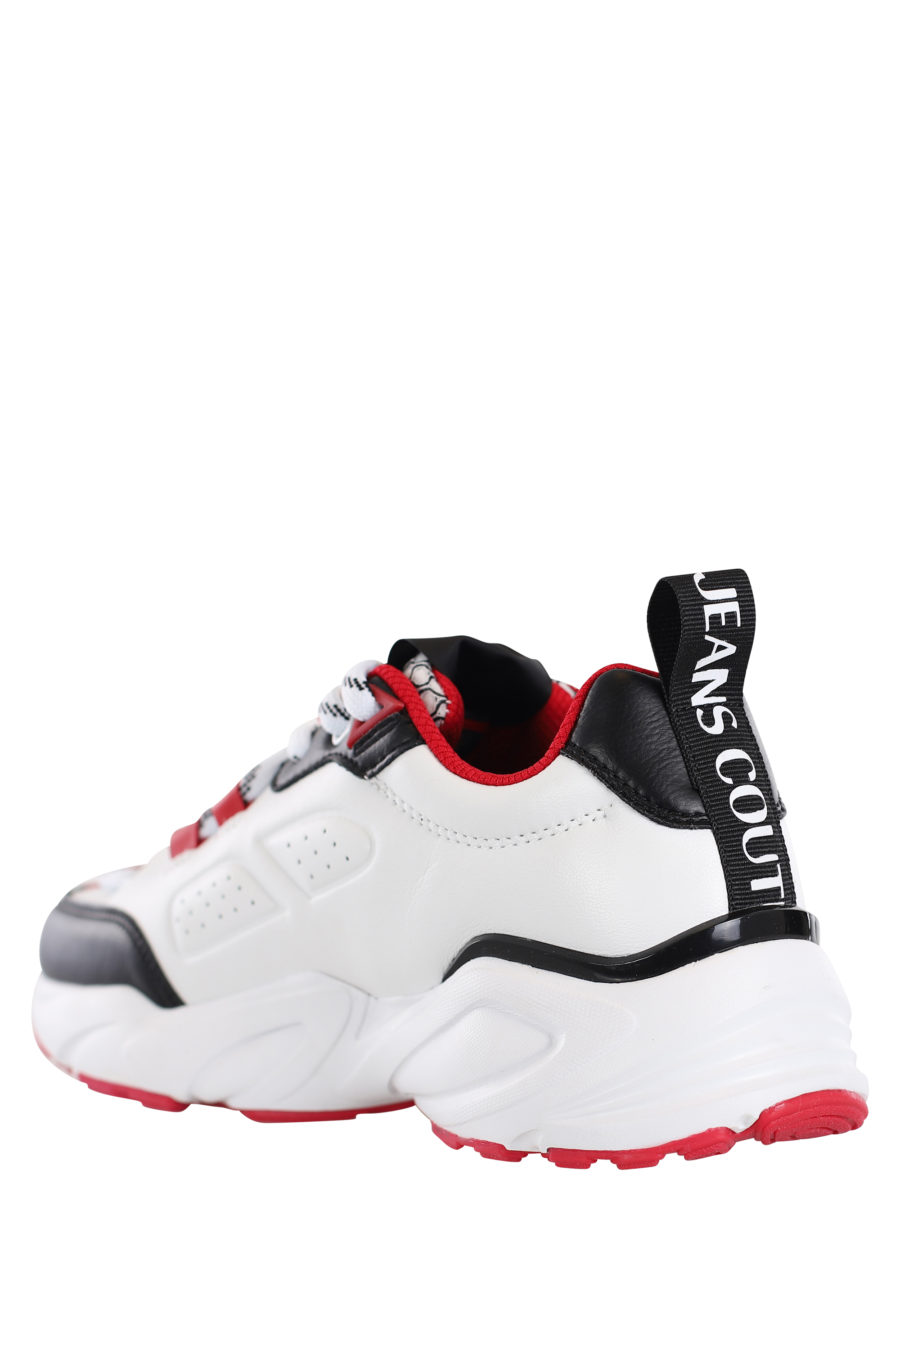 Zapatillas blancas con detalles negros y rojos "Wave" - IMG 0191